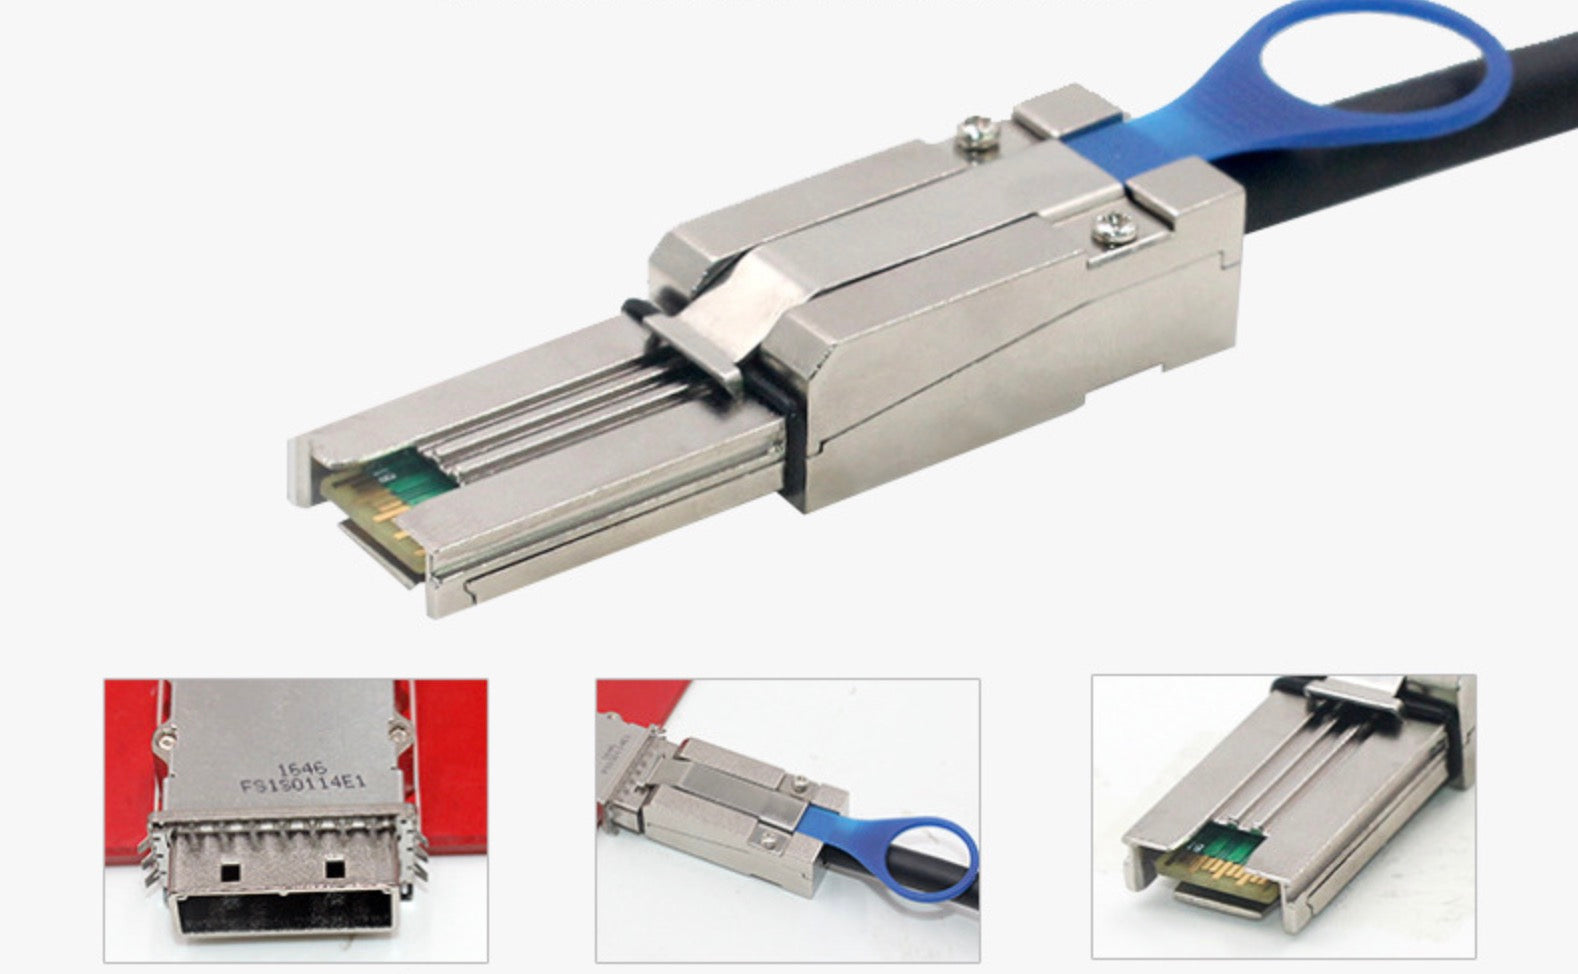 Mini SAS 26 Pin (SFF-8088) to Mini SAS 26 Pin (SFF-8088) External Server Cable 1m